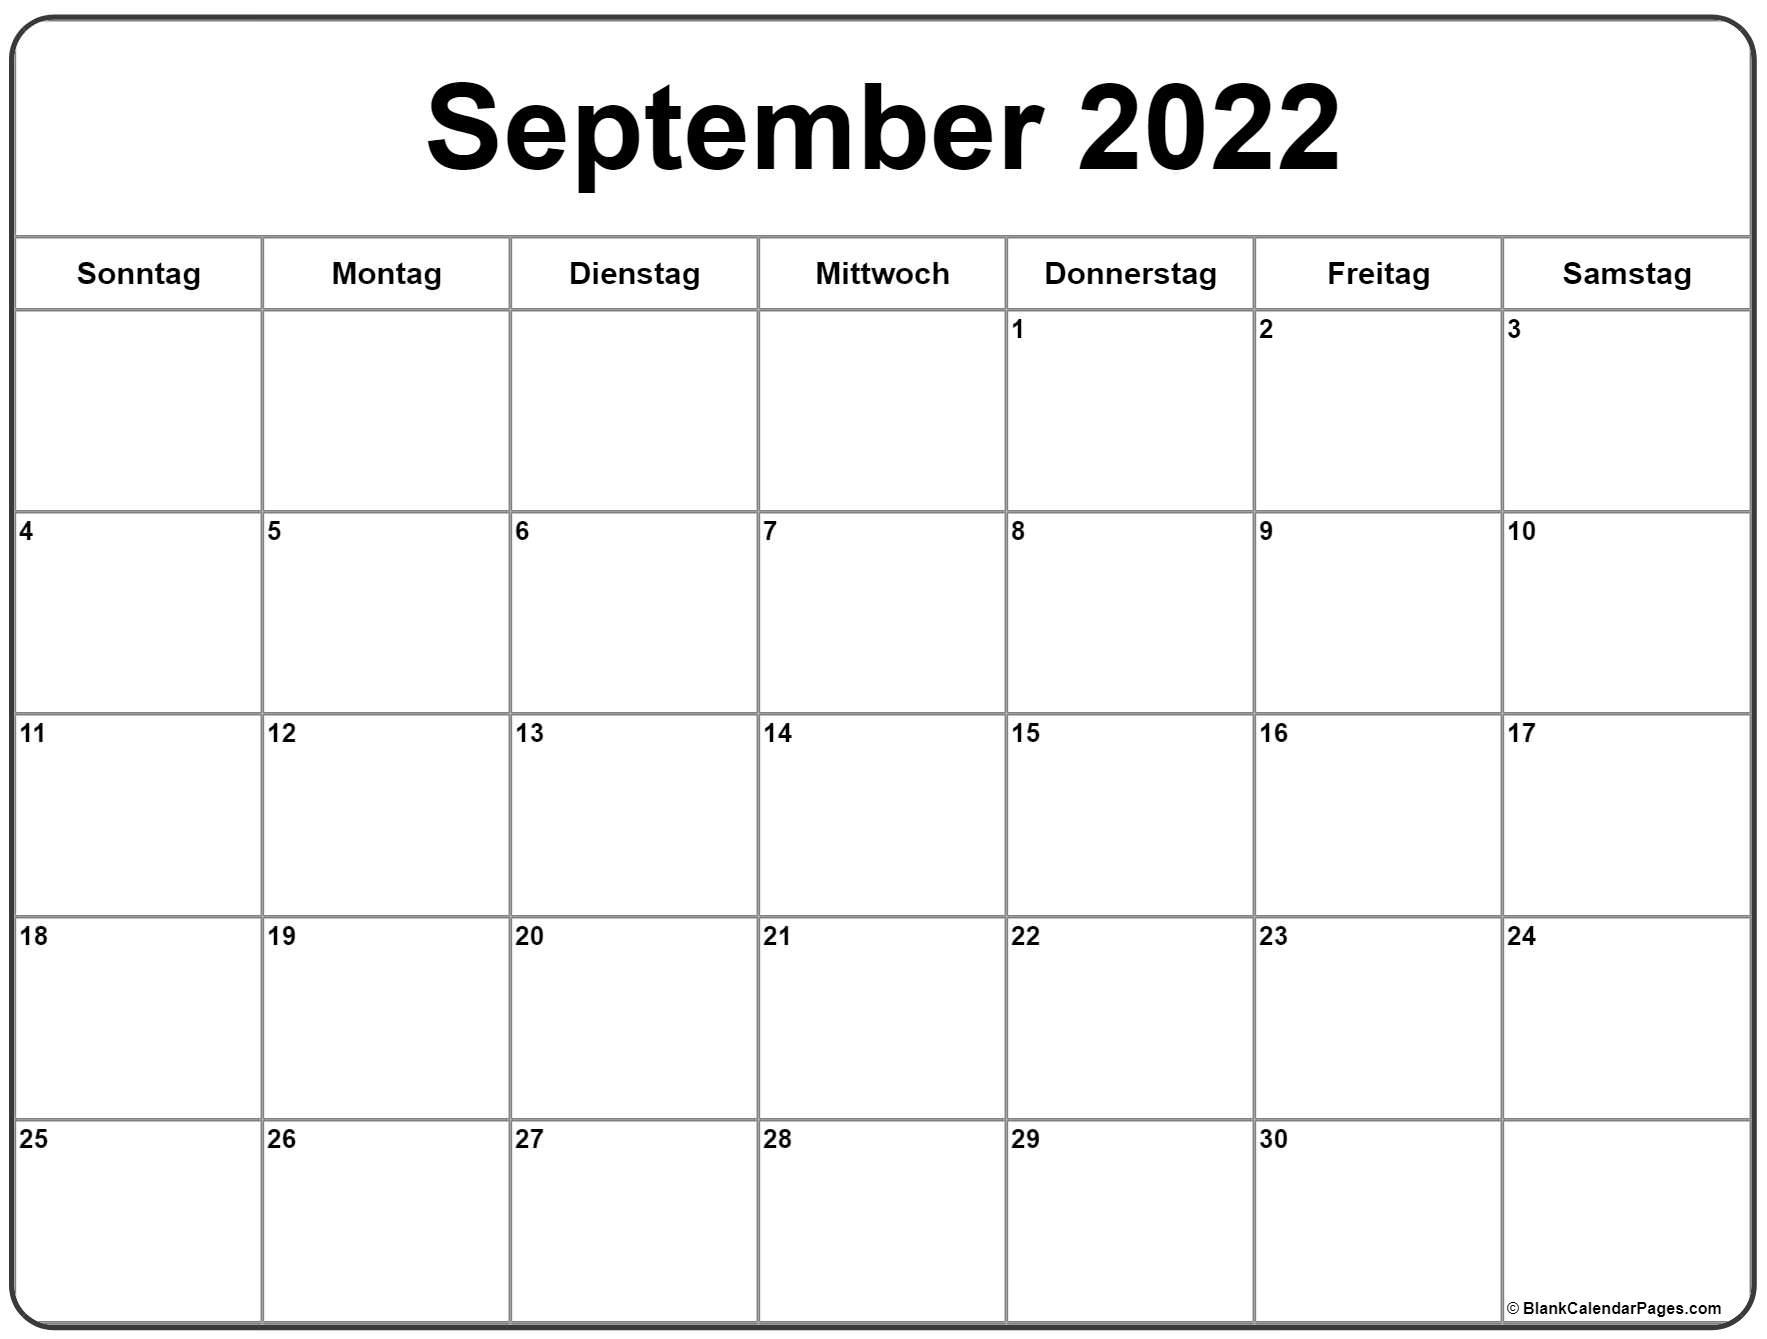 September 2022 Kalender Auf Deutsch | Kalender 2022 Calendar December 2021 To January 2022